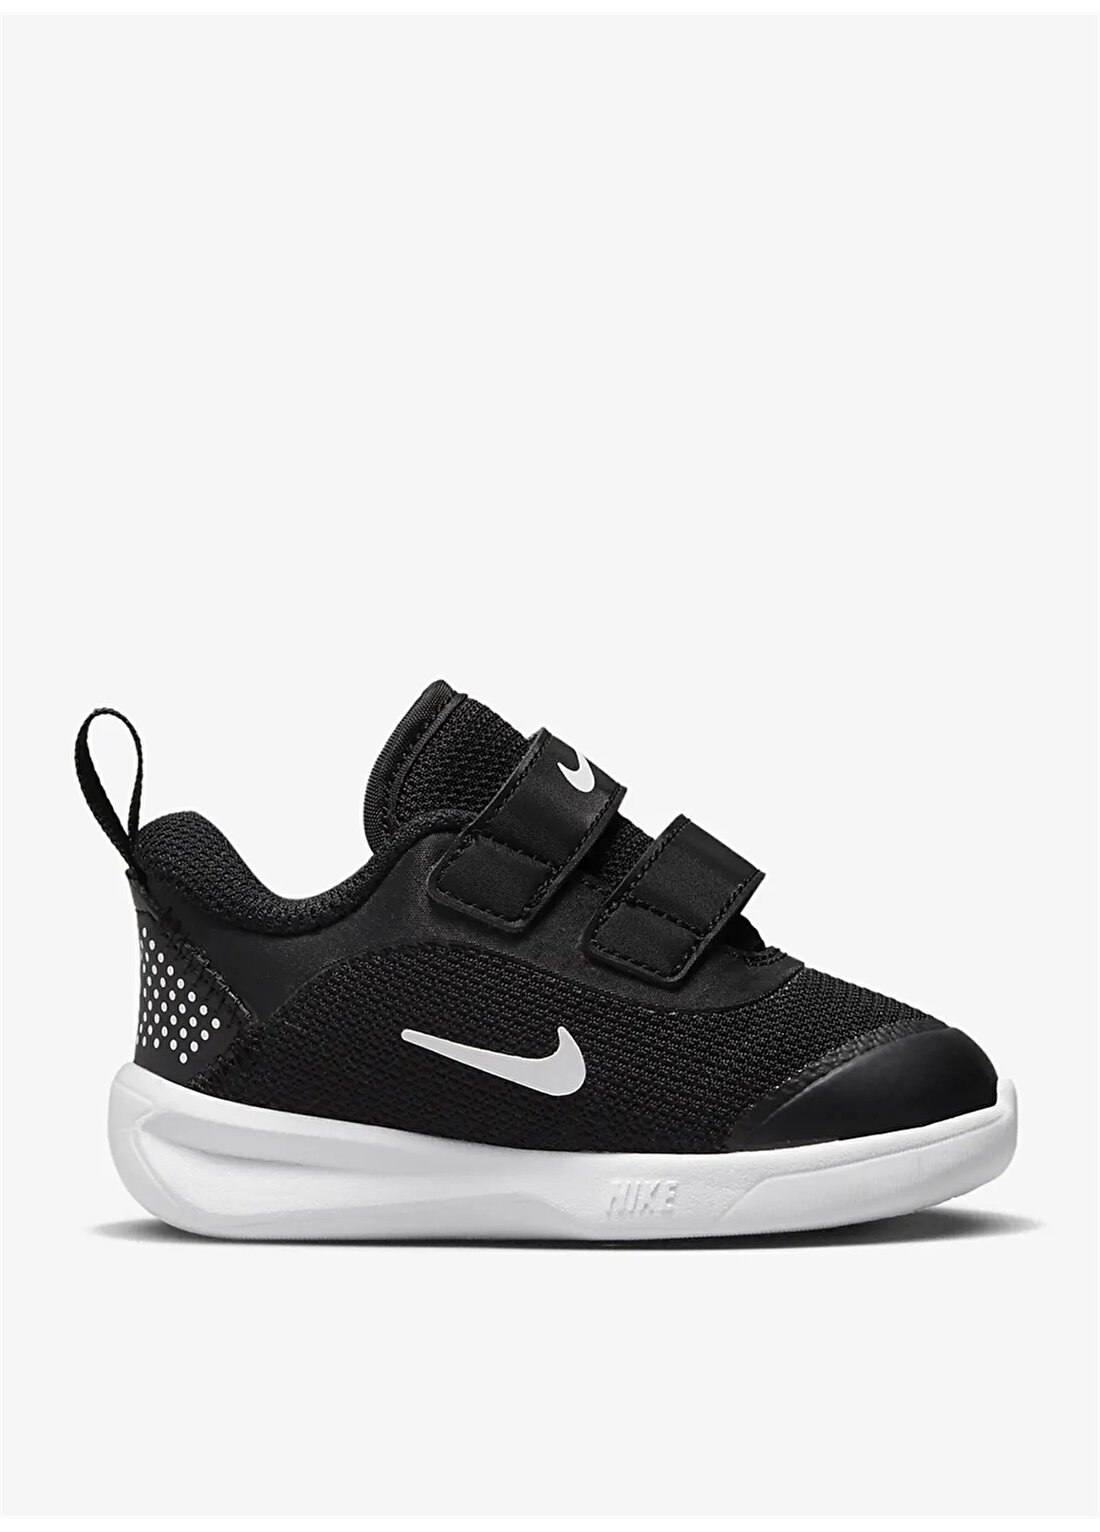 Nike Erkek Çocuk Yürüyüş Ayakkabısı DM9028-002 NIKE OMNI MULTI-COURT